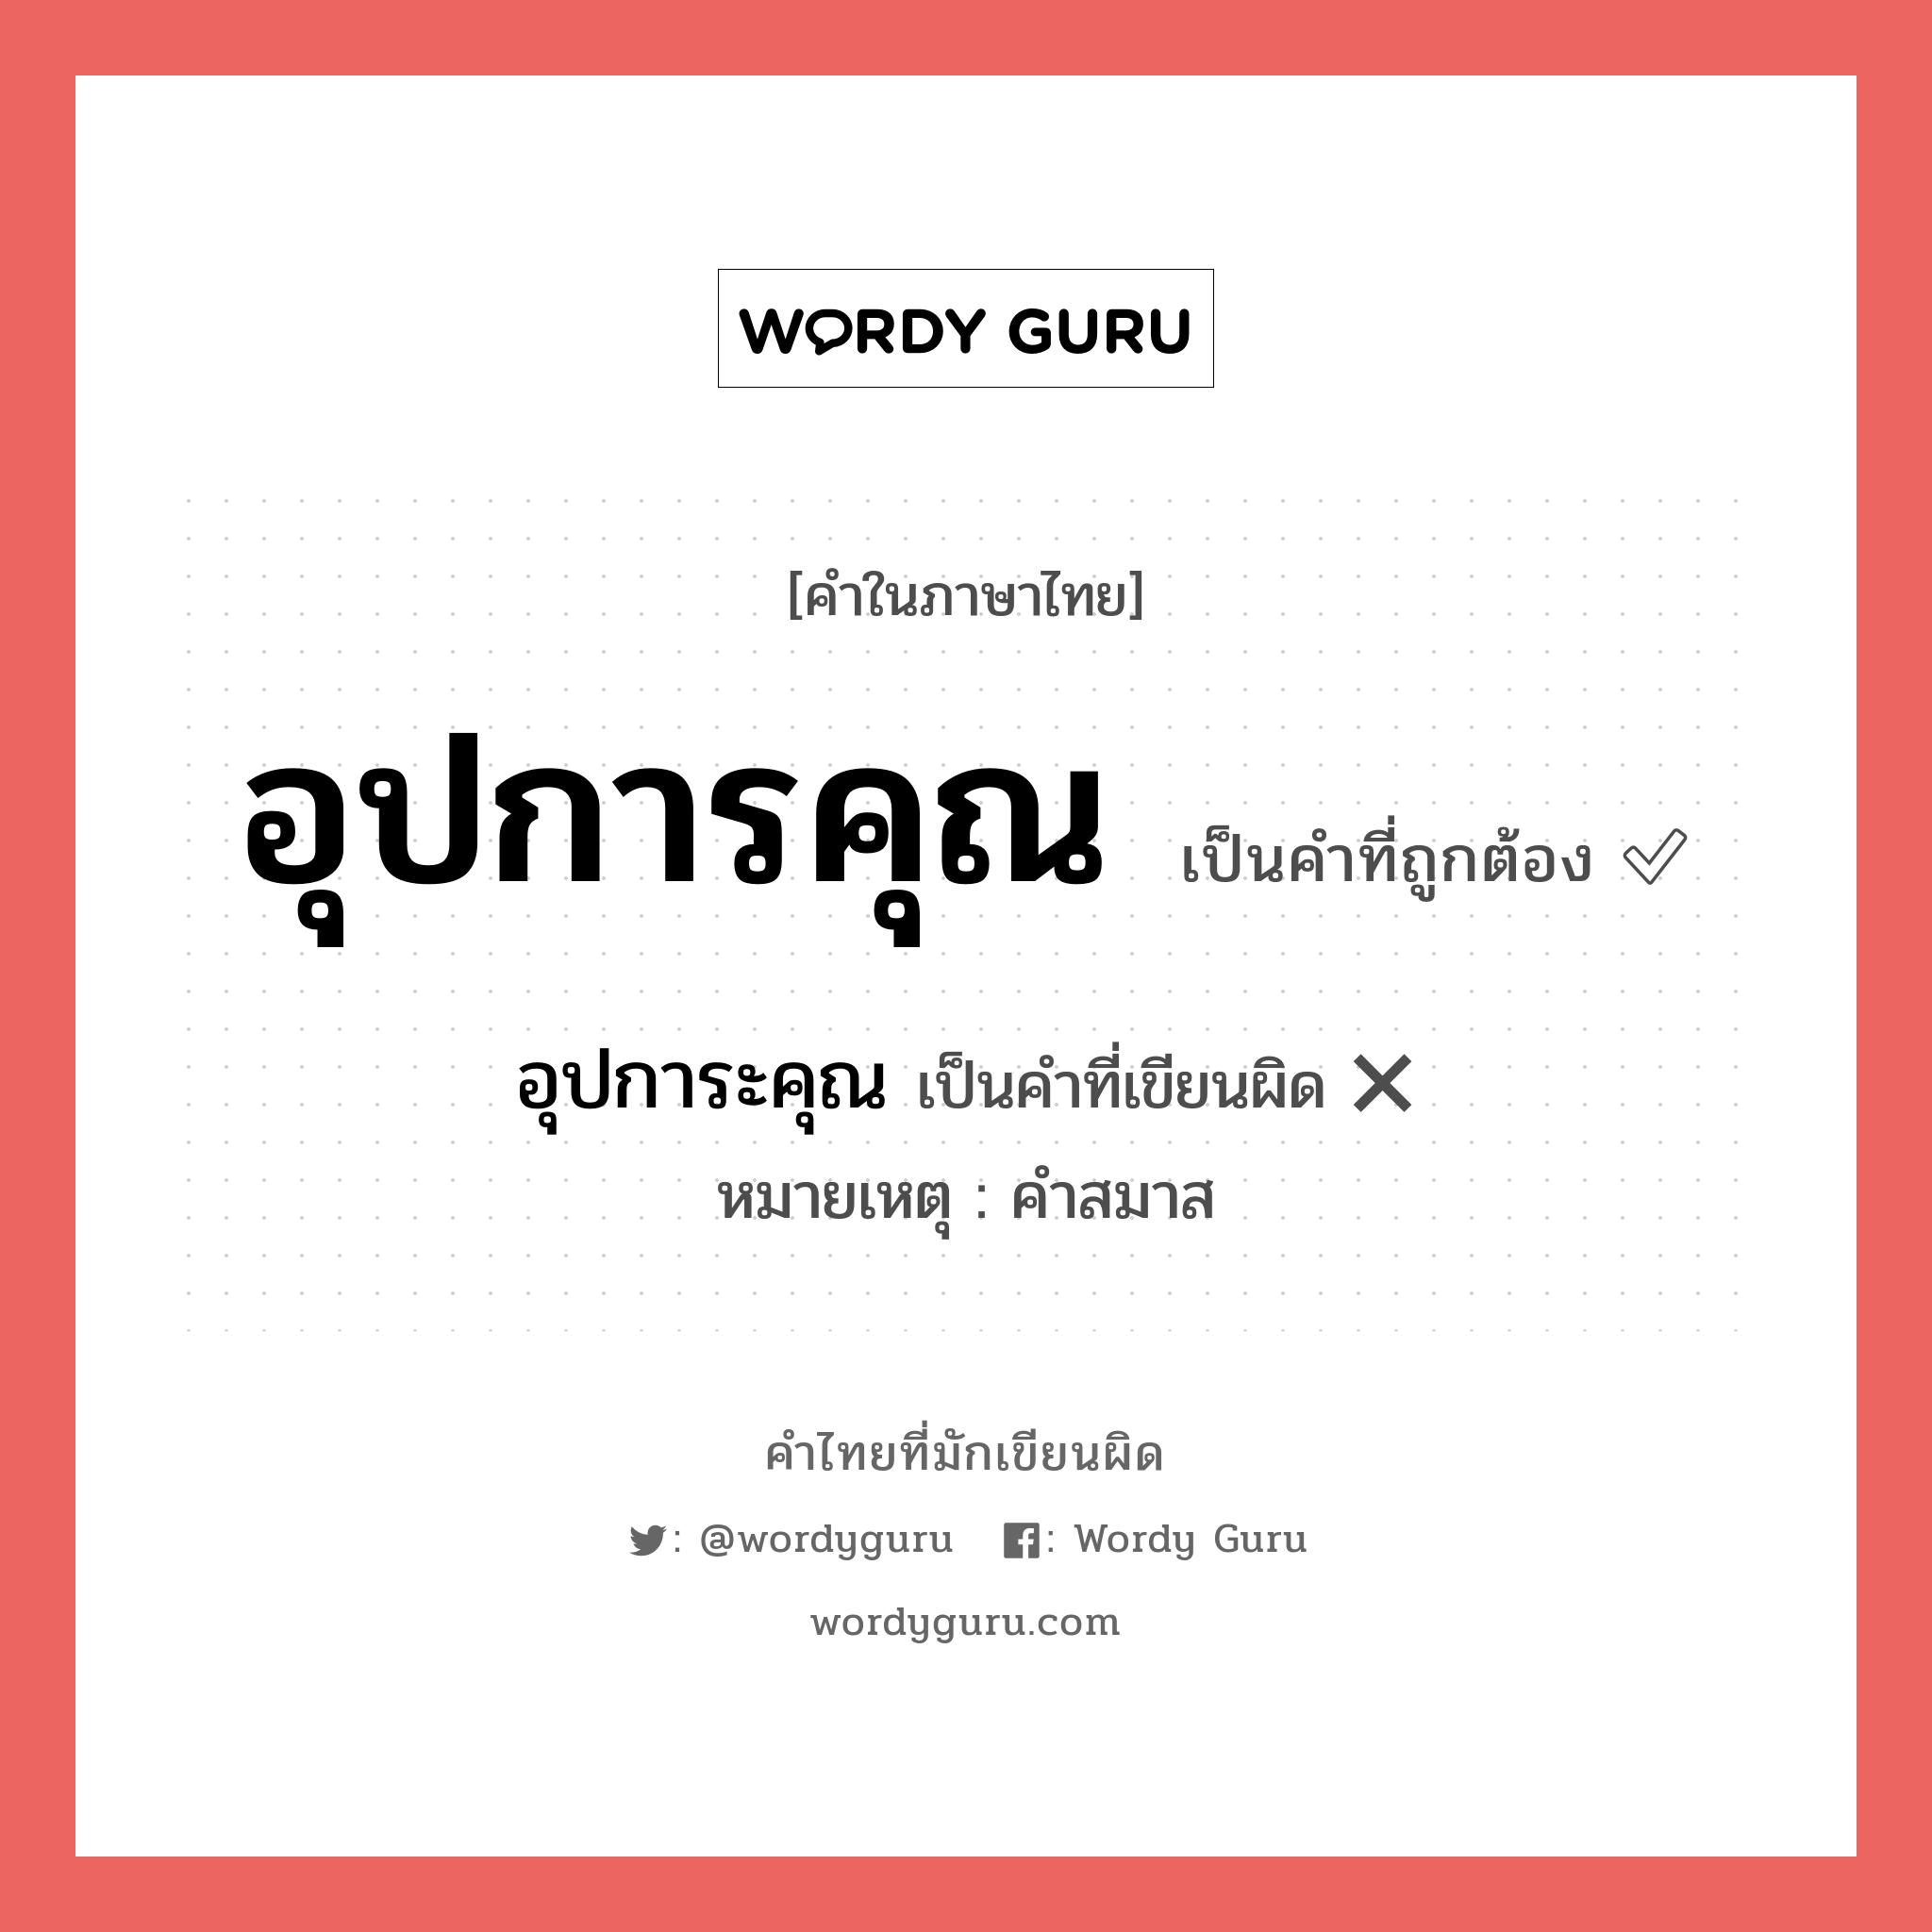 อุปการคุณ หรือ อุปการะคุณ คำไหนเขียนถูก?, คำในภาษาไทยที่มักเขียนผิด อุปการคุณ คำที่ผิด ❌ อุปการะคุณ หมายเหตุ คำสมาส